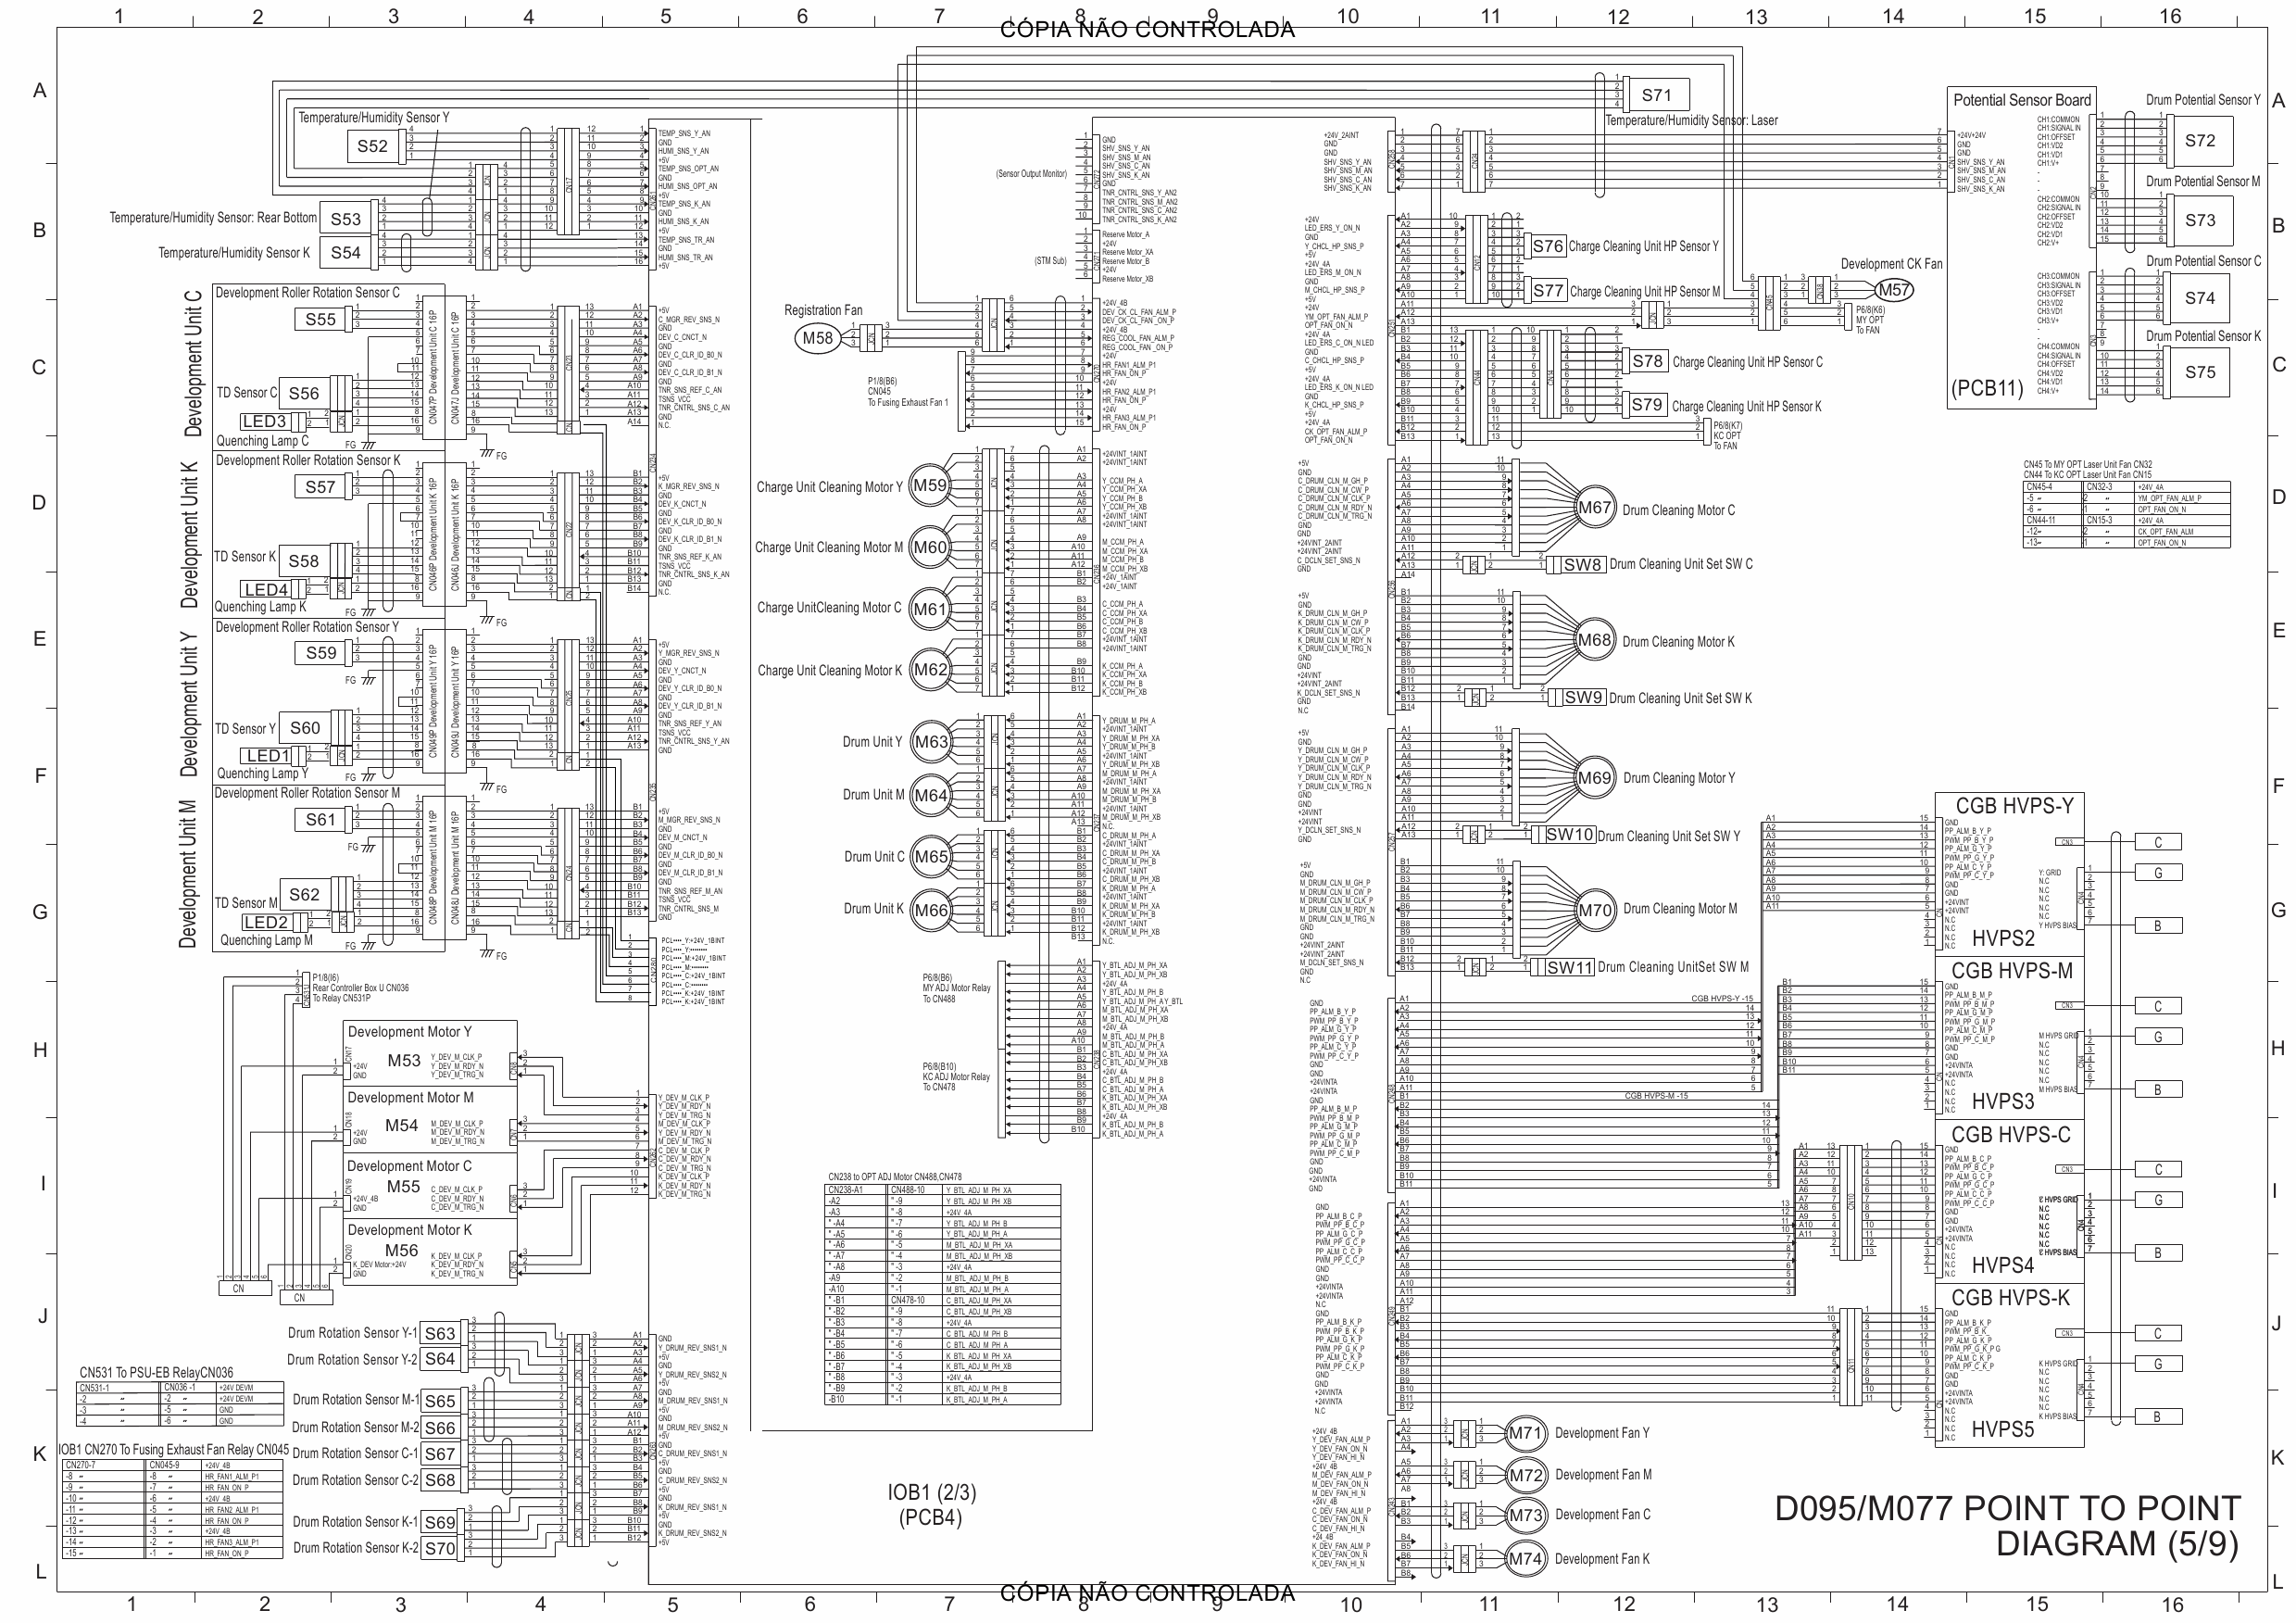 RICOH Aficio Pro-C901s C901 D095 M077 Circuit Diagram-5